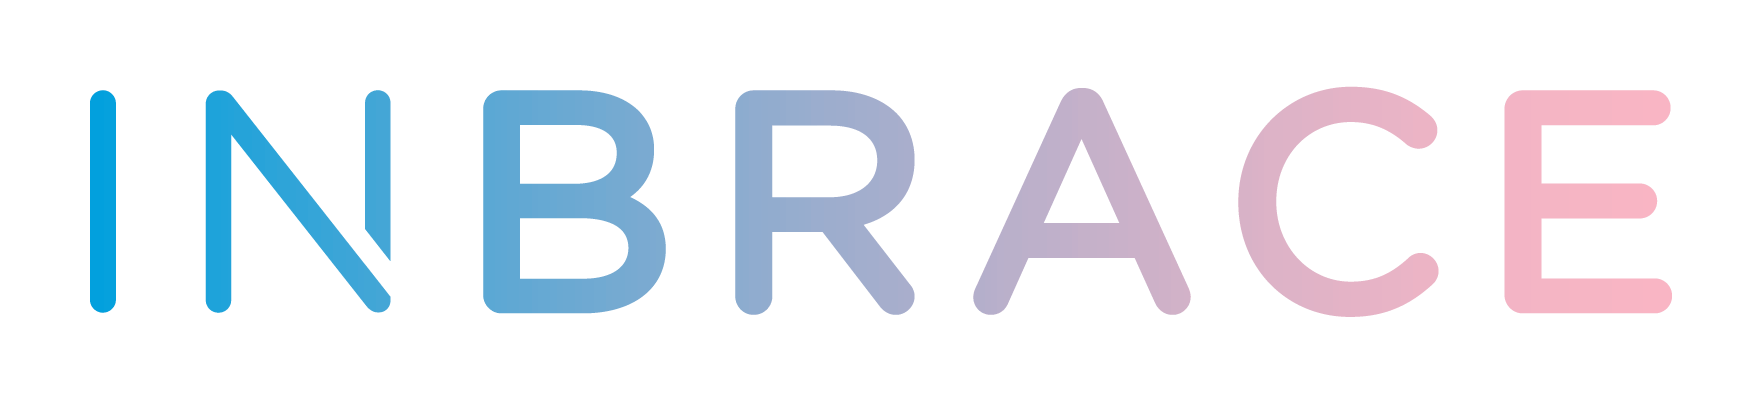 INBRACE-Logo-RGB